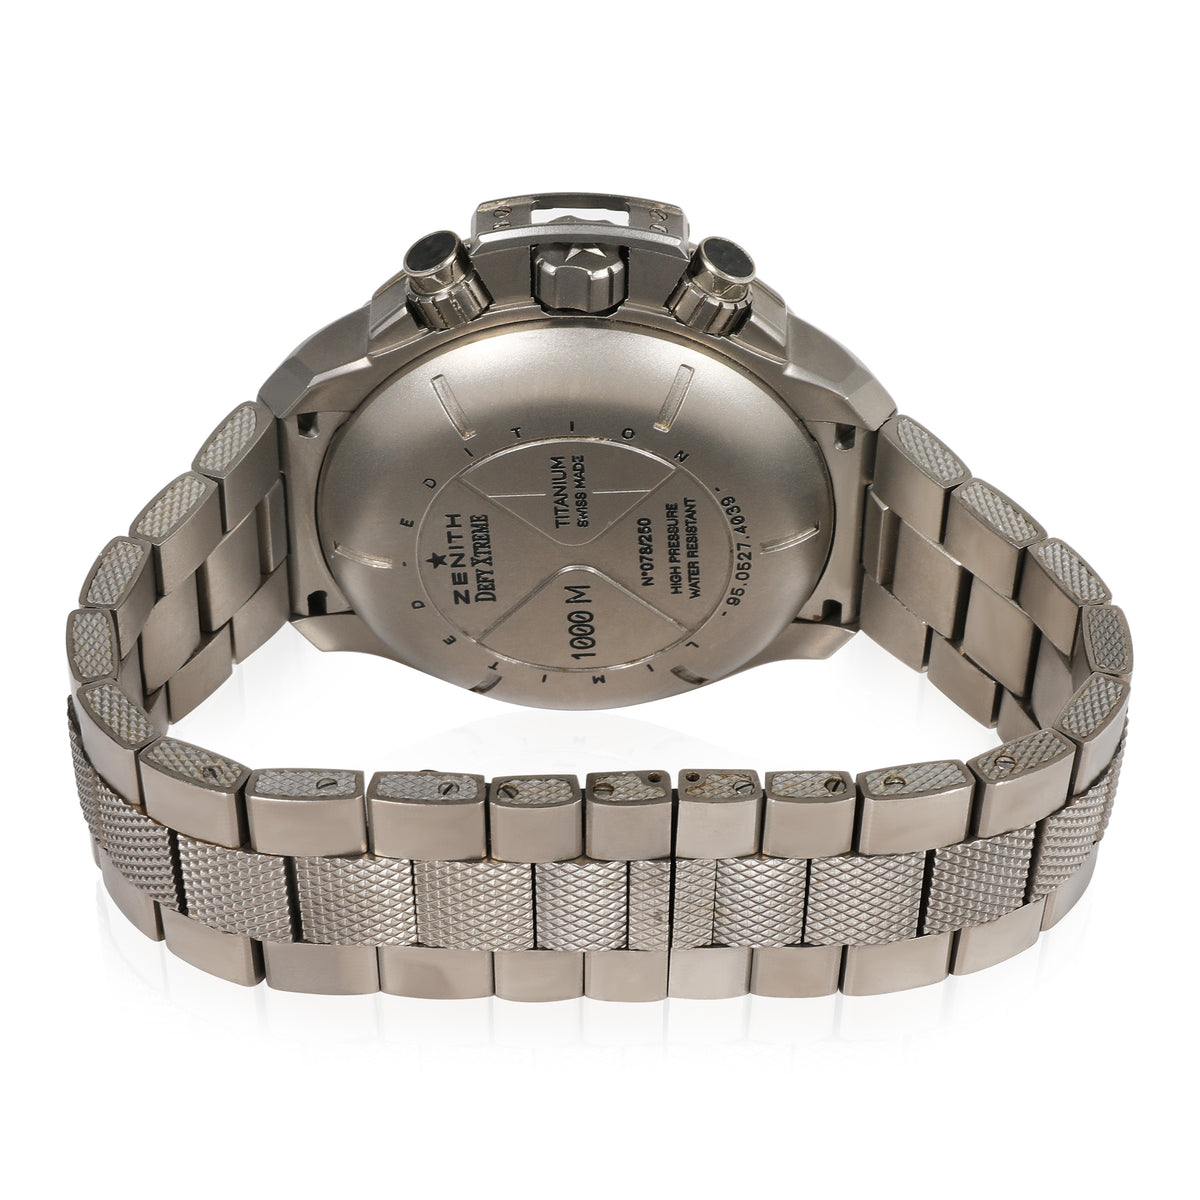 Defy Extreme 95.0527.4039 Men's Watch in  Titanium